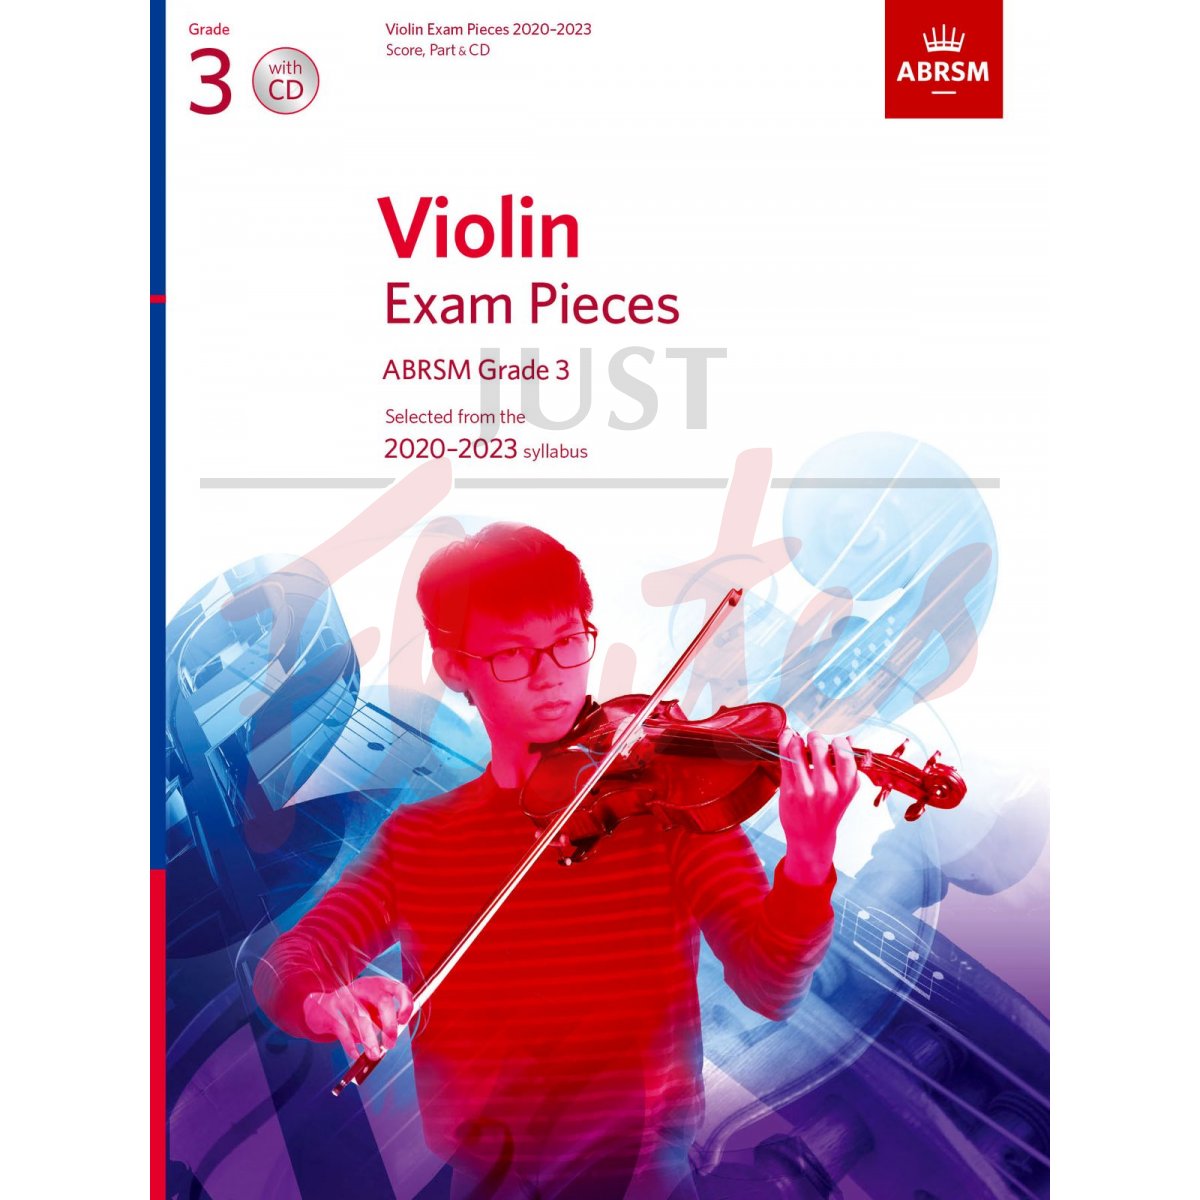 Violin Exam Pieces 2020-2023, Grade 3